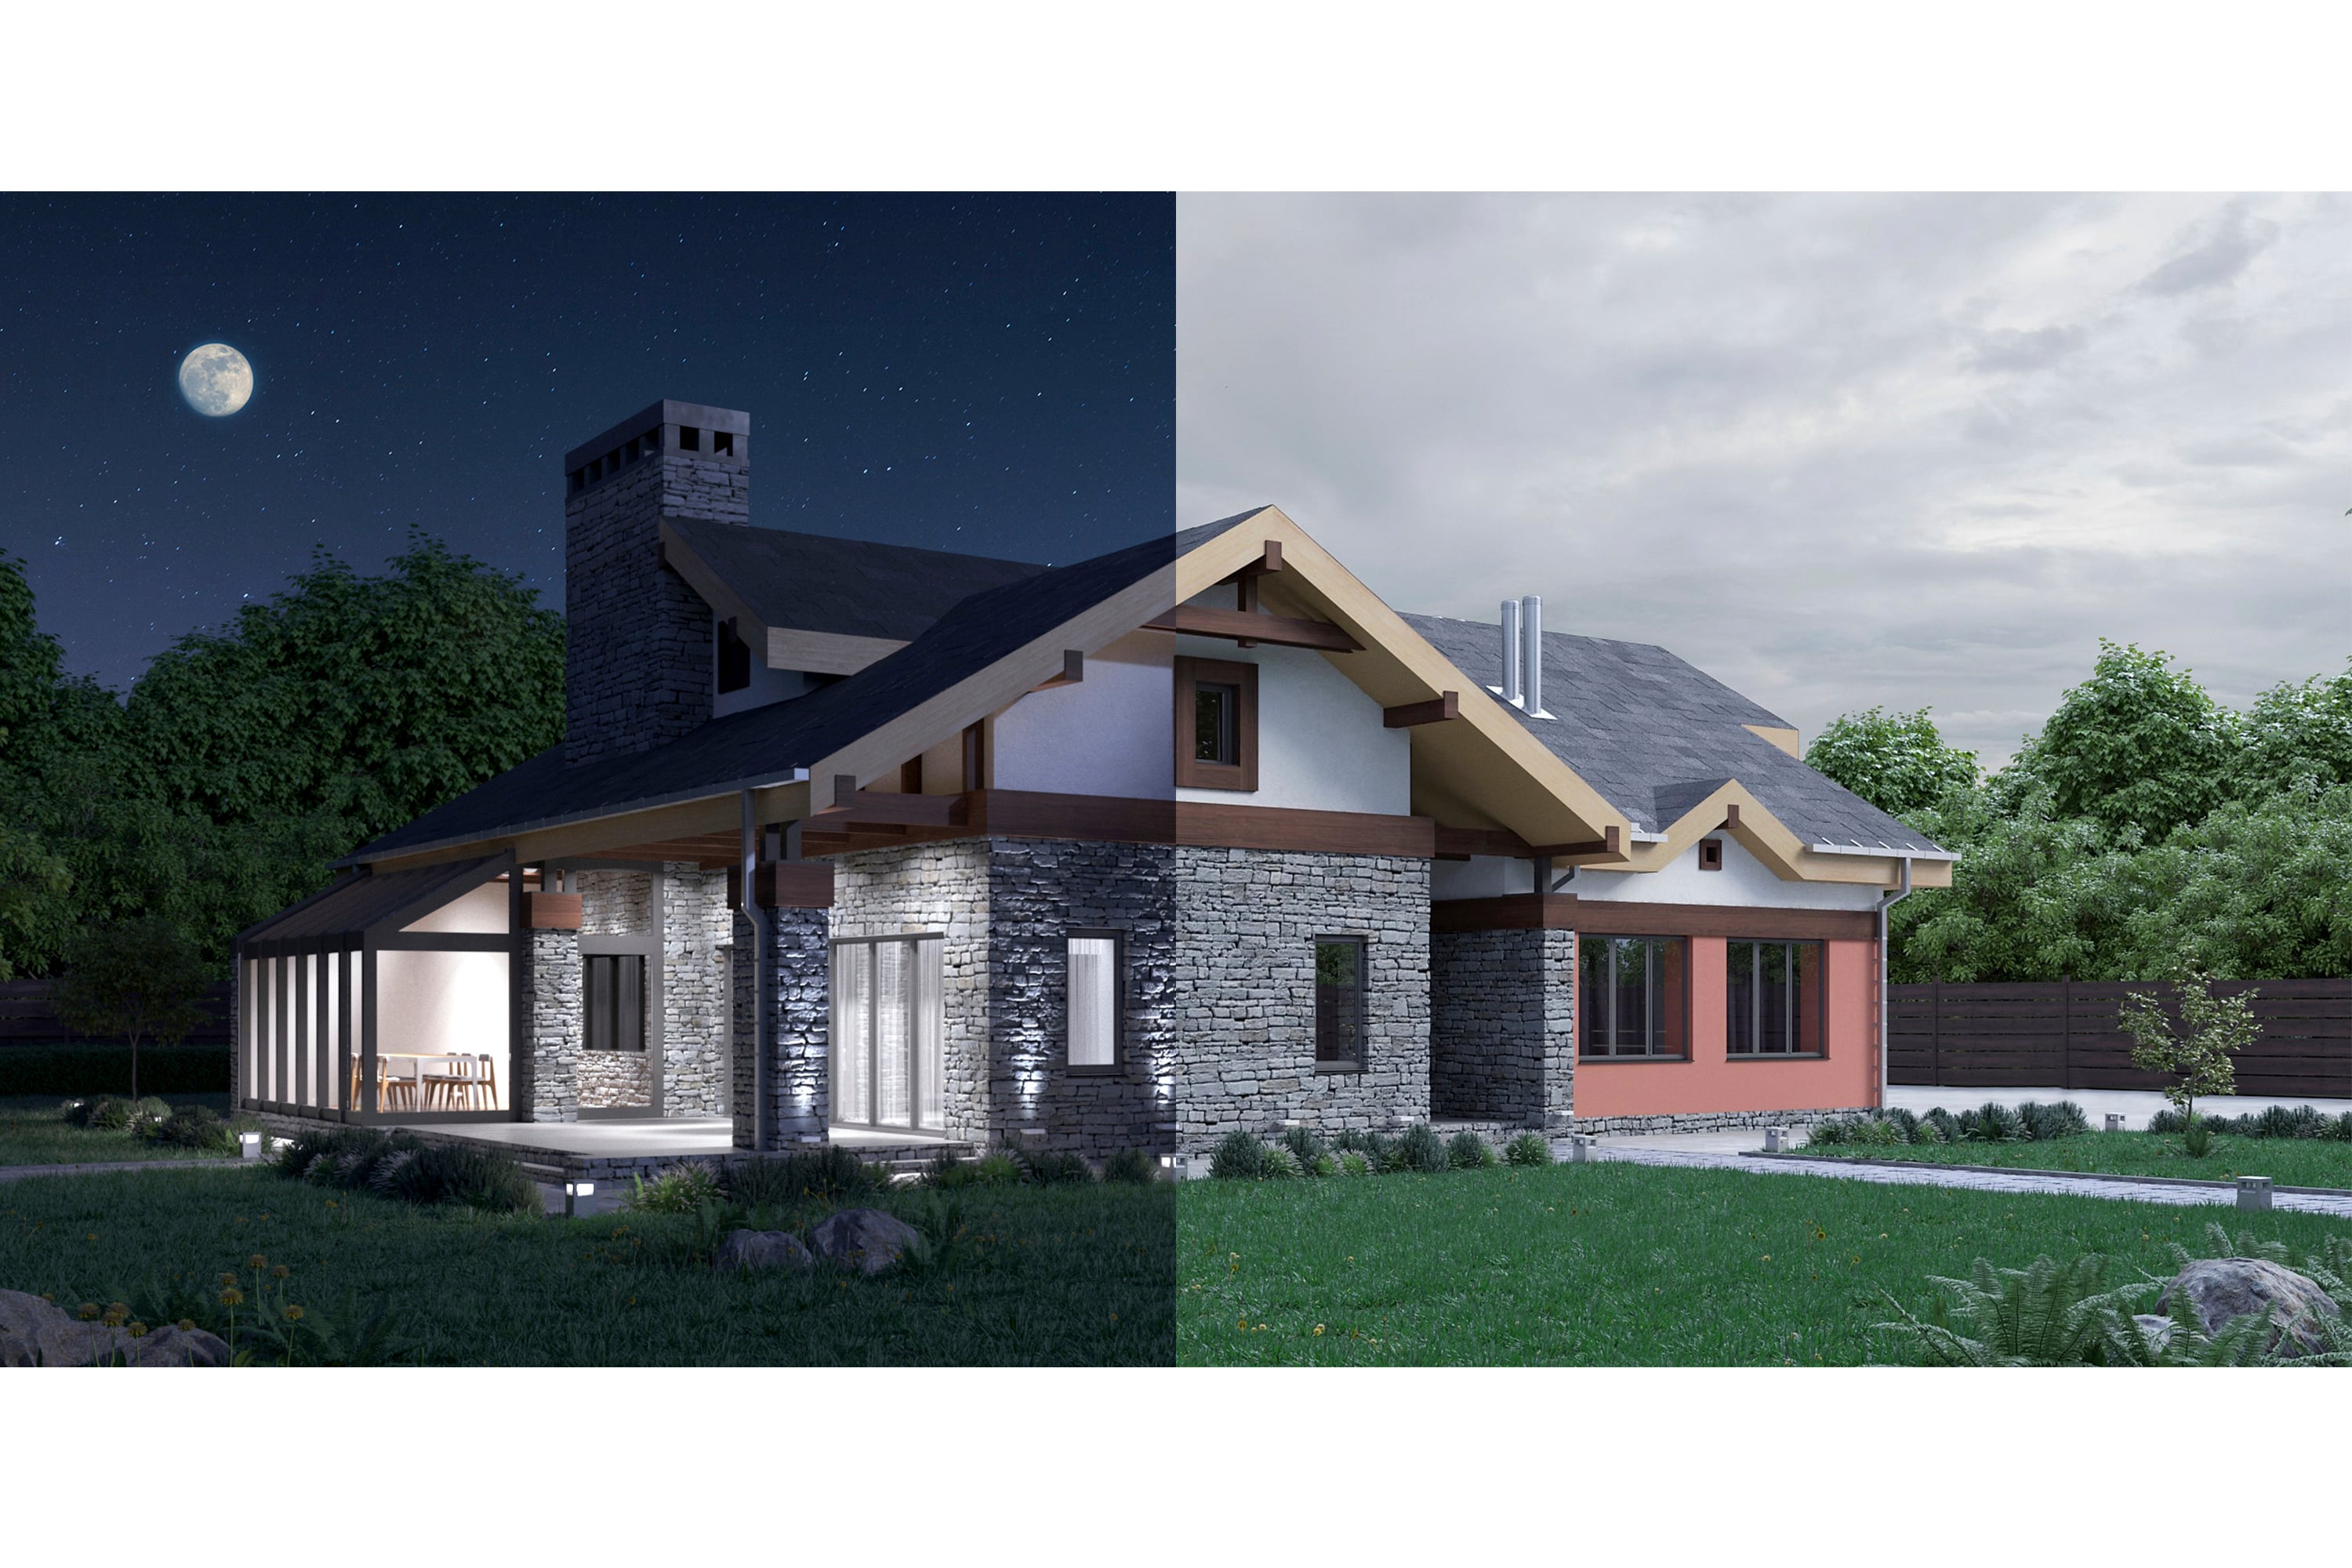 Ein Bild, das aus 2 separaten Fotos desselben Hauses besteht, wobei die linke Seite ein Foto des Hauses bei Nacht und die rechte Seite ein Foto bei Tag ist.